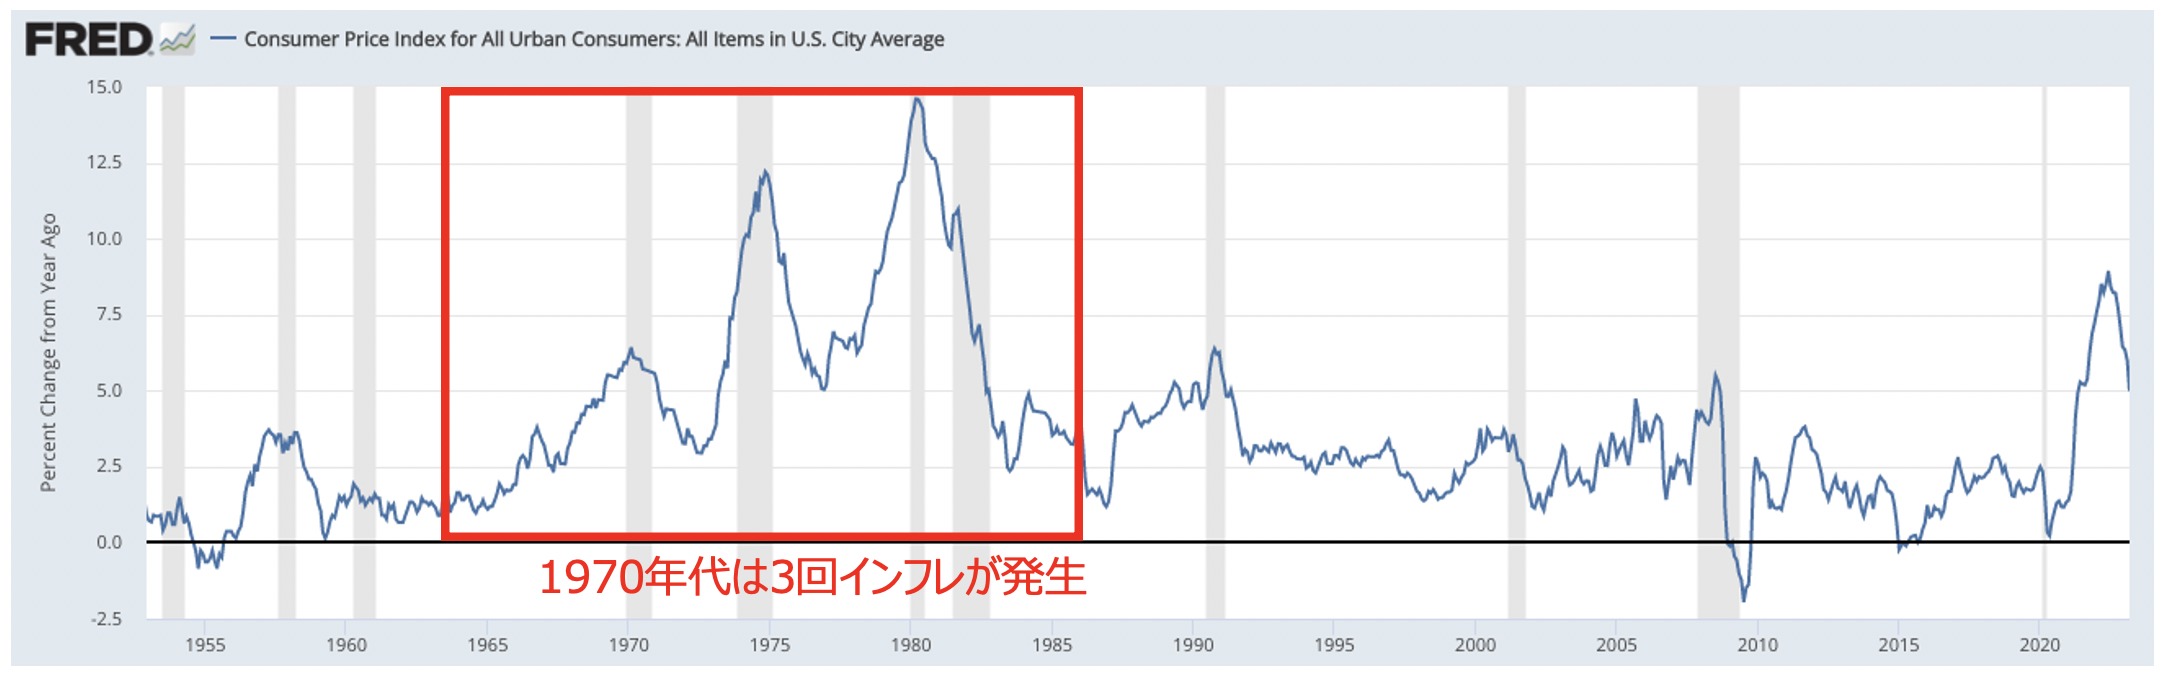 1970年代は3度にわたりインフレが発生